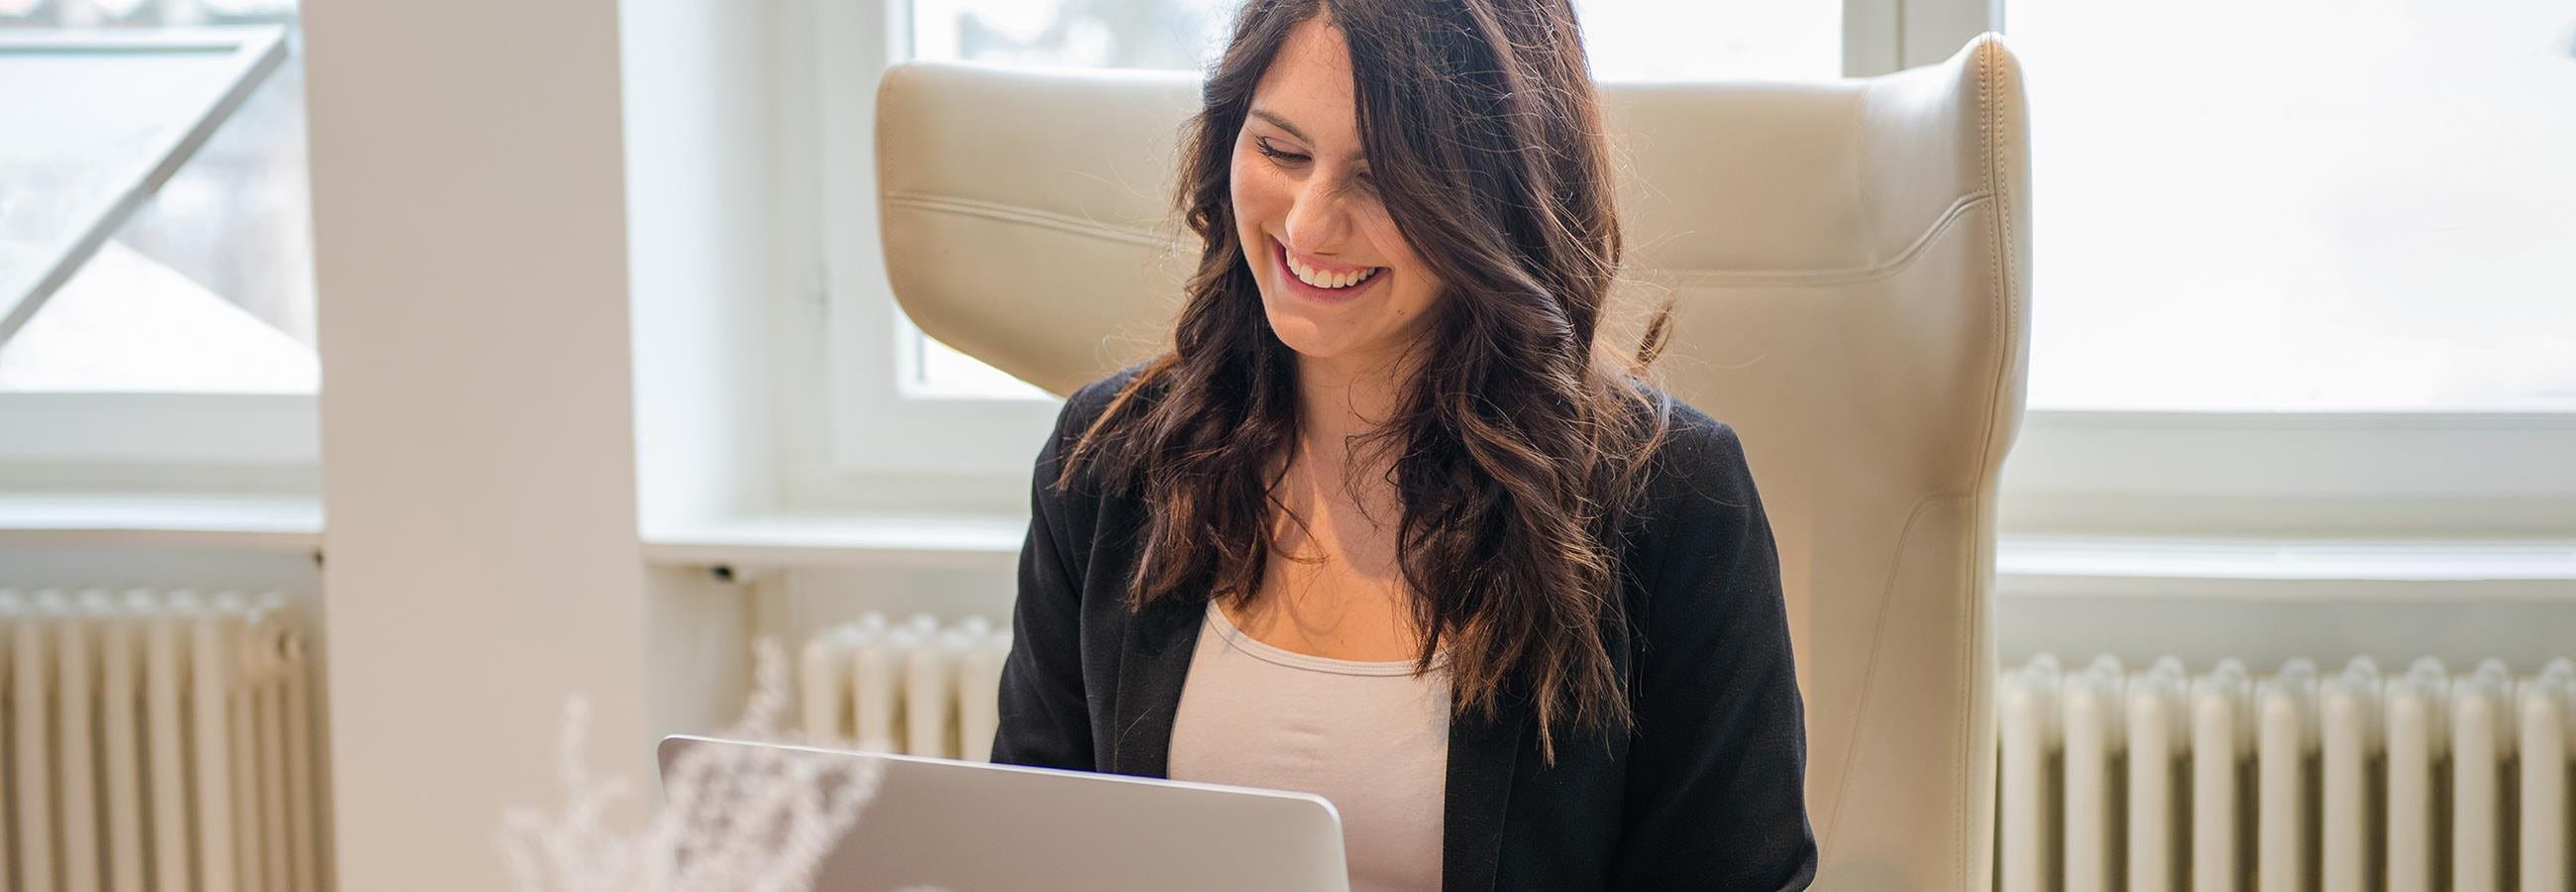 Jeune femme assise devant un ordinateur portable et riant